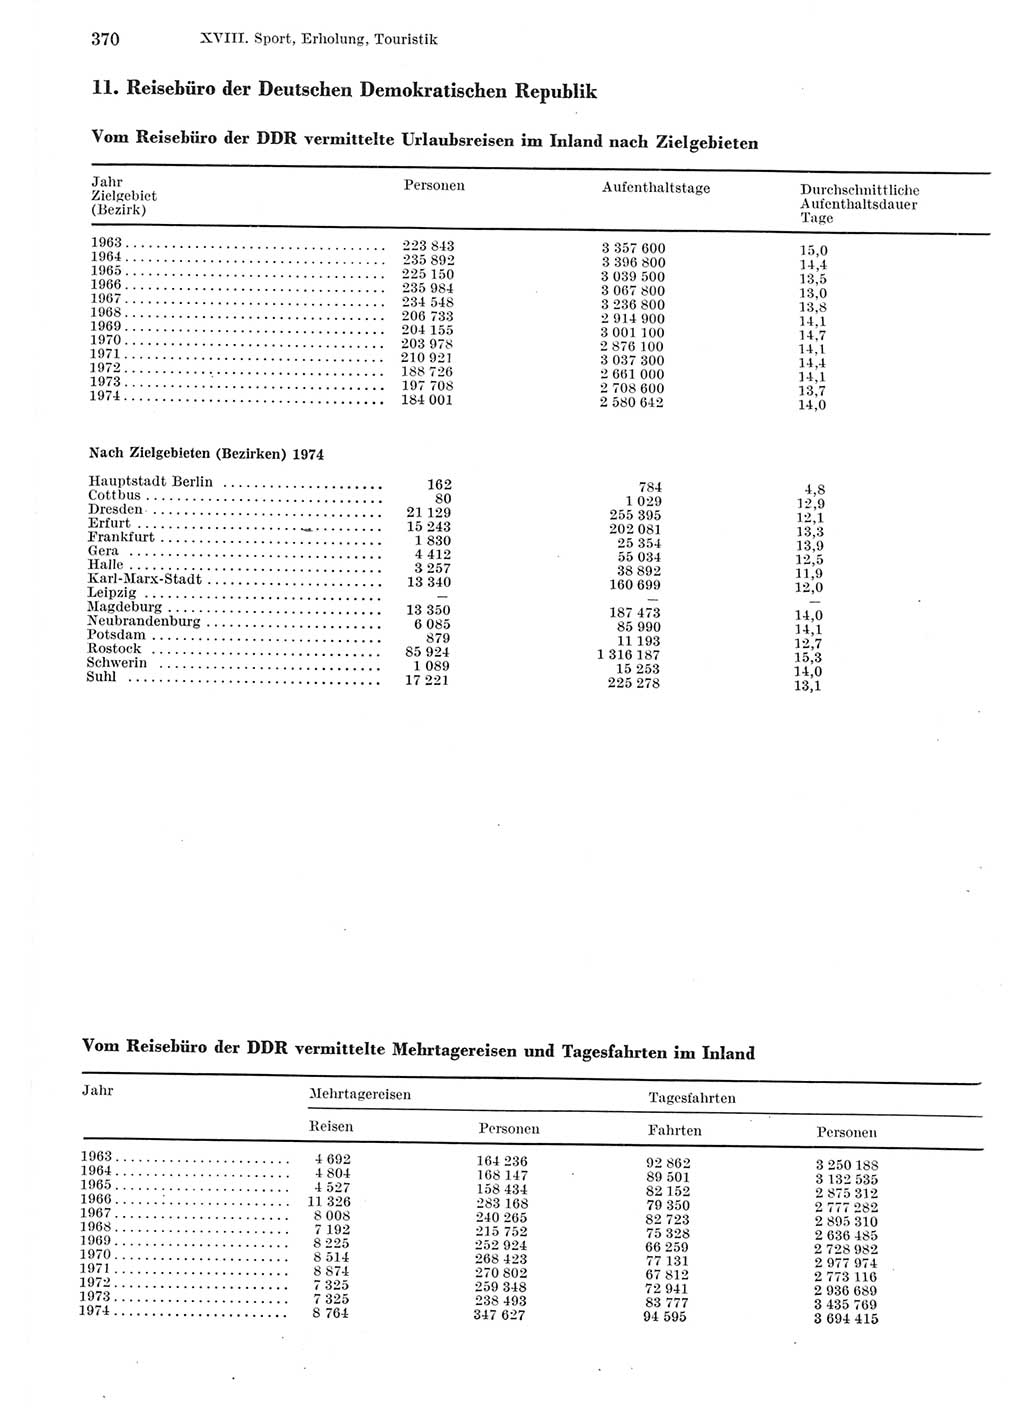 Statistisches Jahrbuch der Deutschen Demokratischen Republik (DDR) 1975, Seite 370 (Stat. Jb. DDR 1975, S. 370)